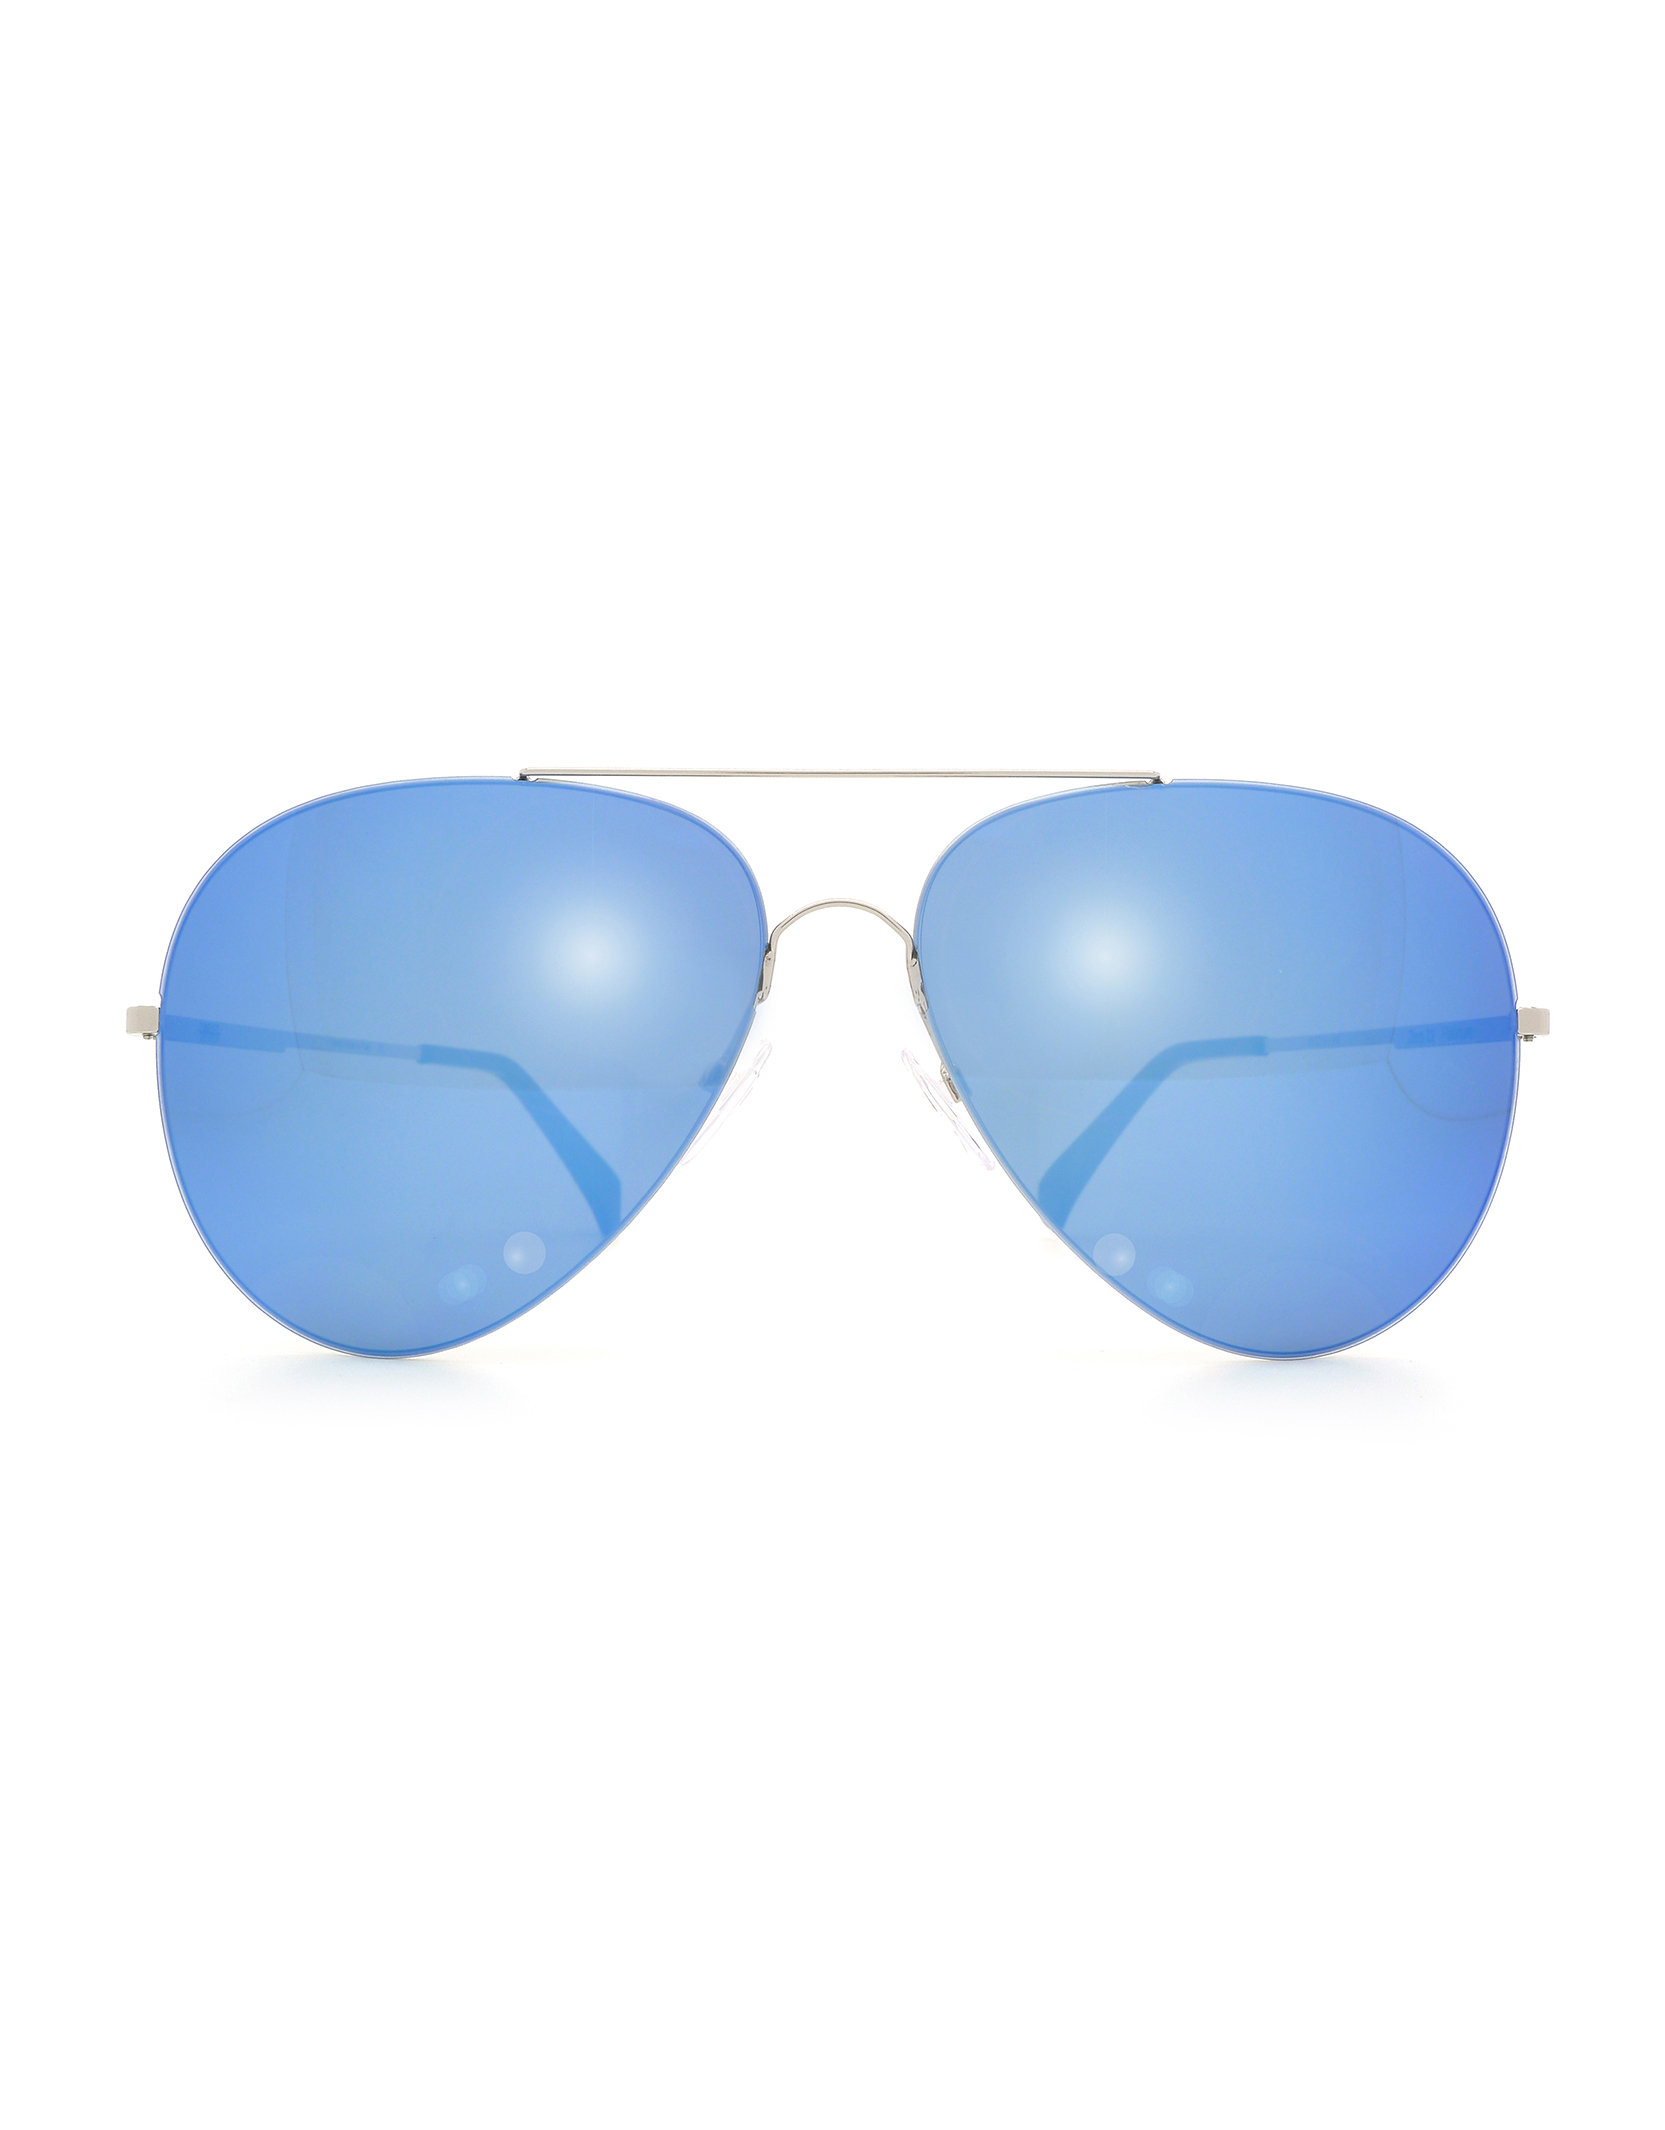 ZERO 11 Blue Mirror - Luxury Sunglasses, Designer Sunglasses | Finest Seven